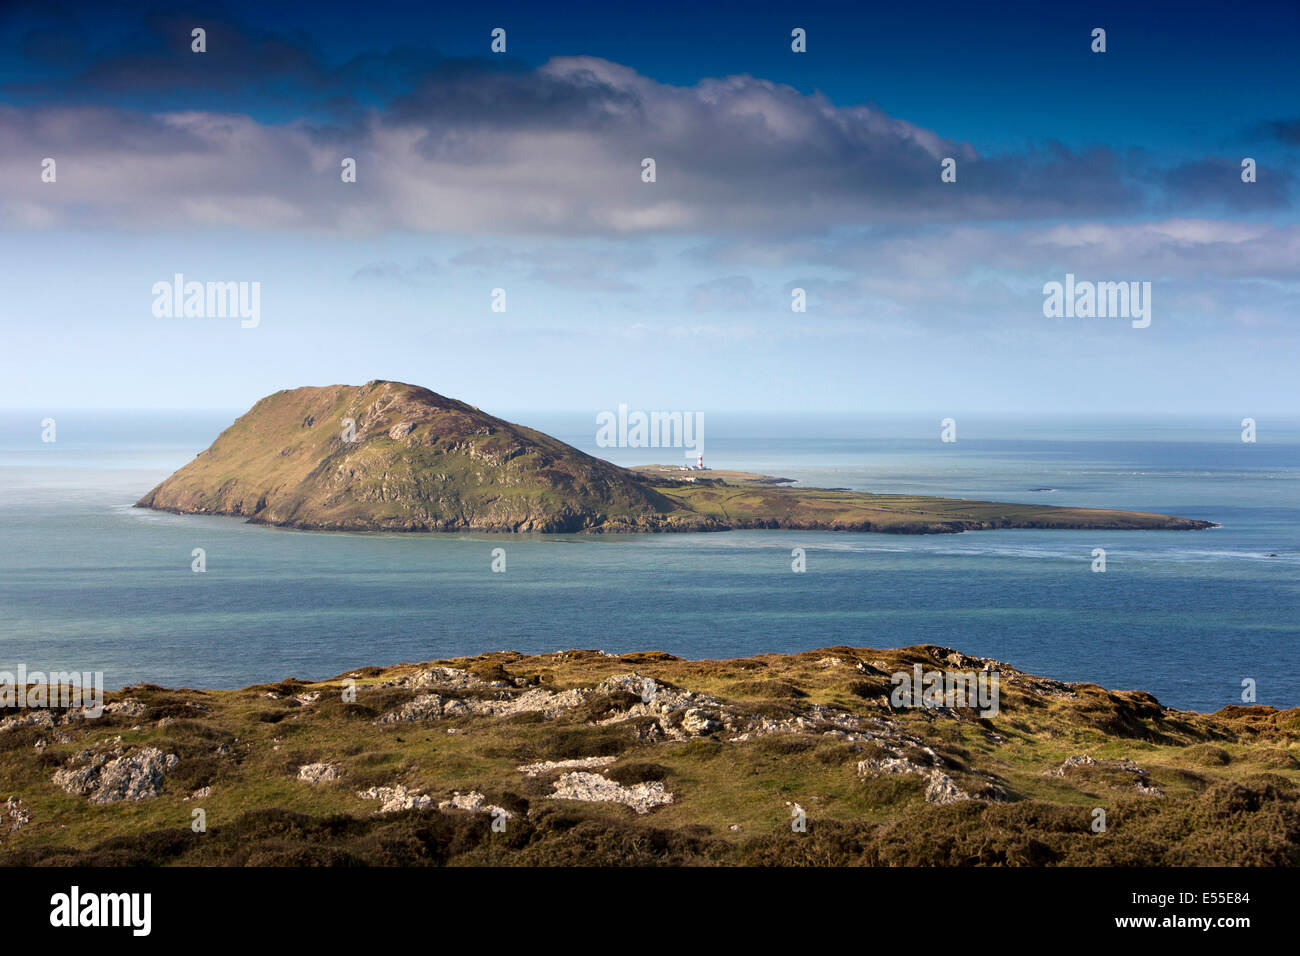 UK, Wales, Gwynedd, Lleyn peninsula, Aberdaron, Bardsey Island, Ynys Enlli, from Mynydd Mawr Stock Photo